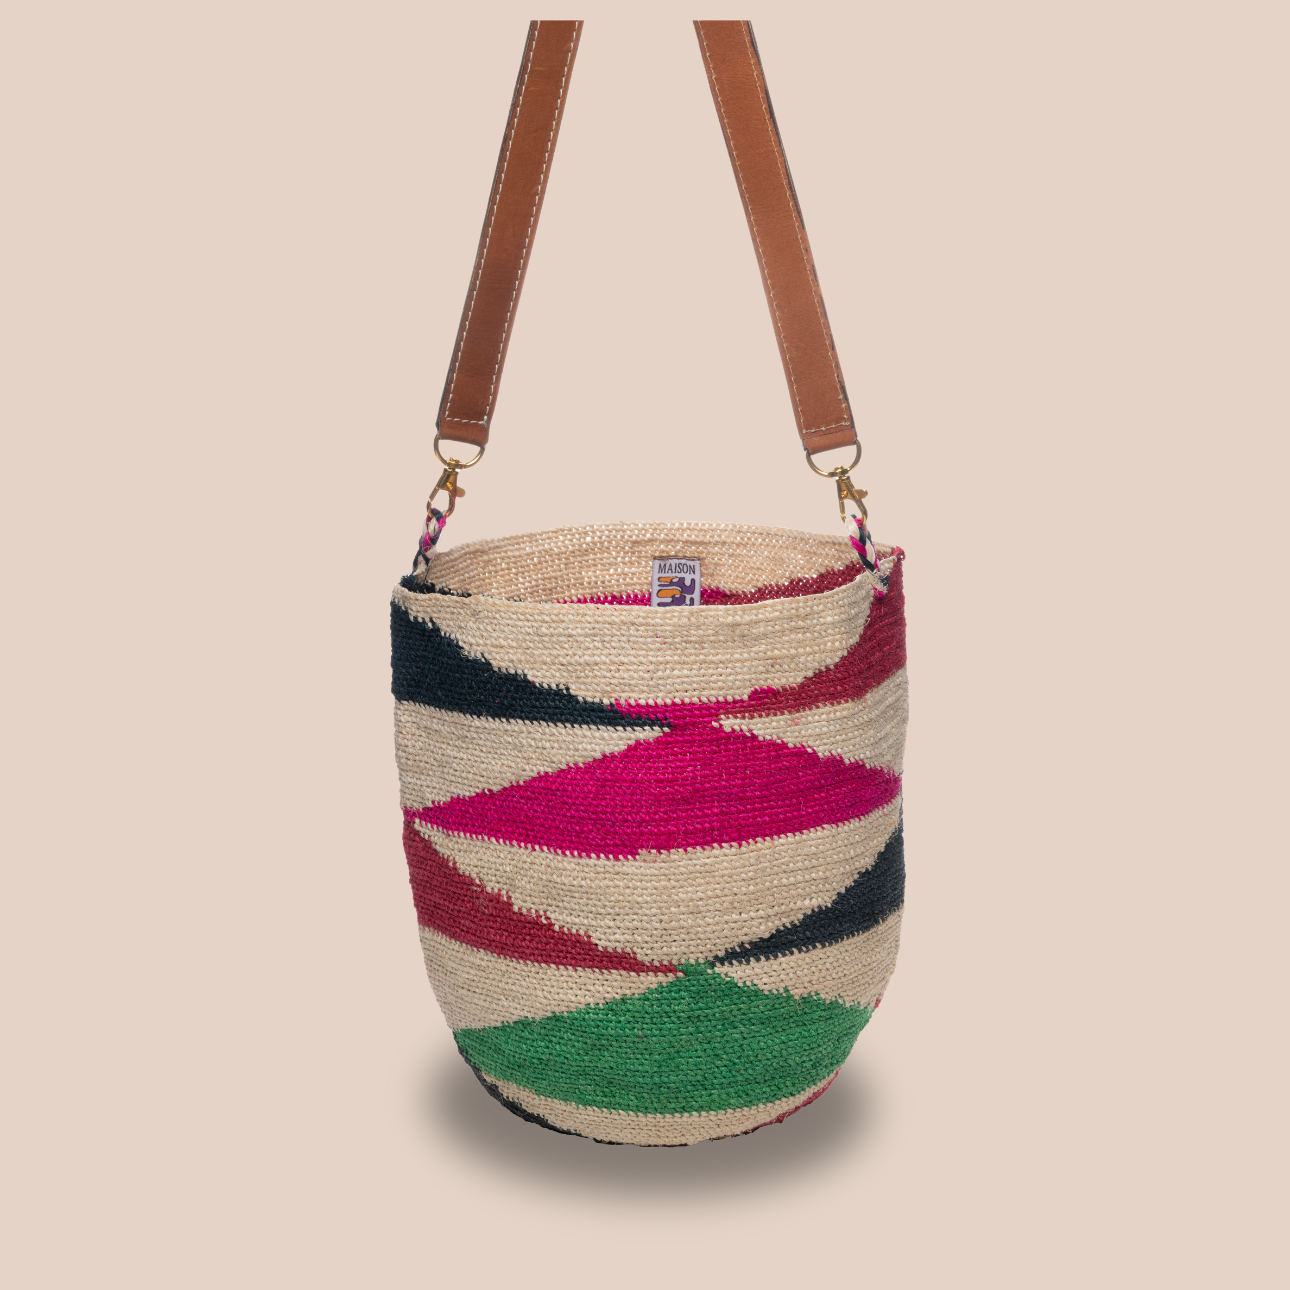 Image du sac Reina de Maison Badigo,sac en fibres de cactus multicolore unique et tendance